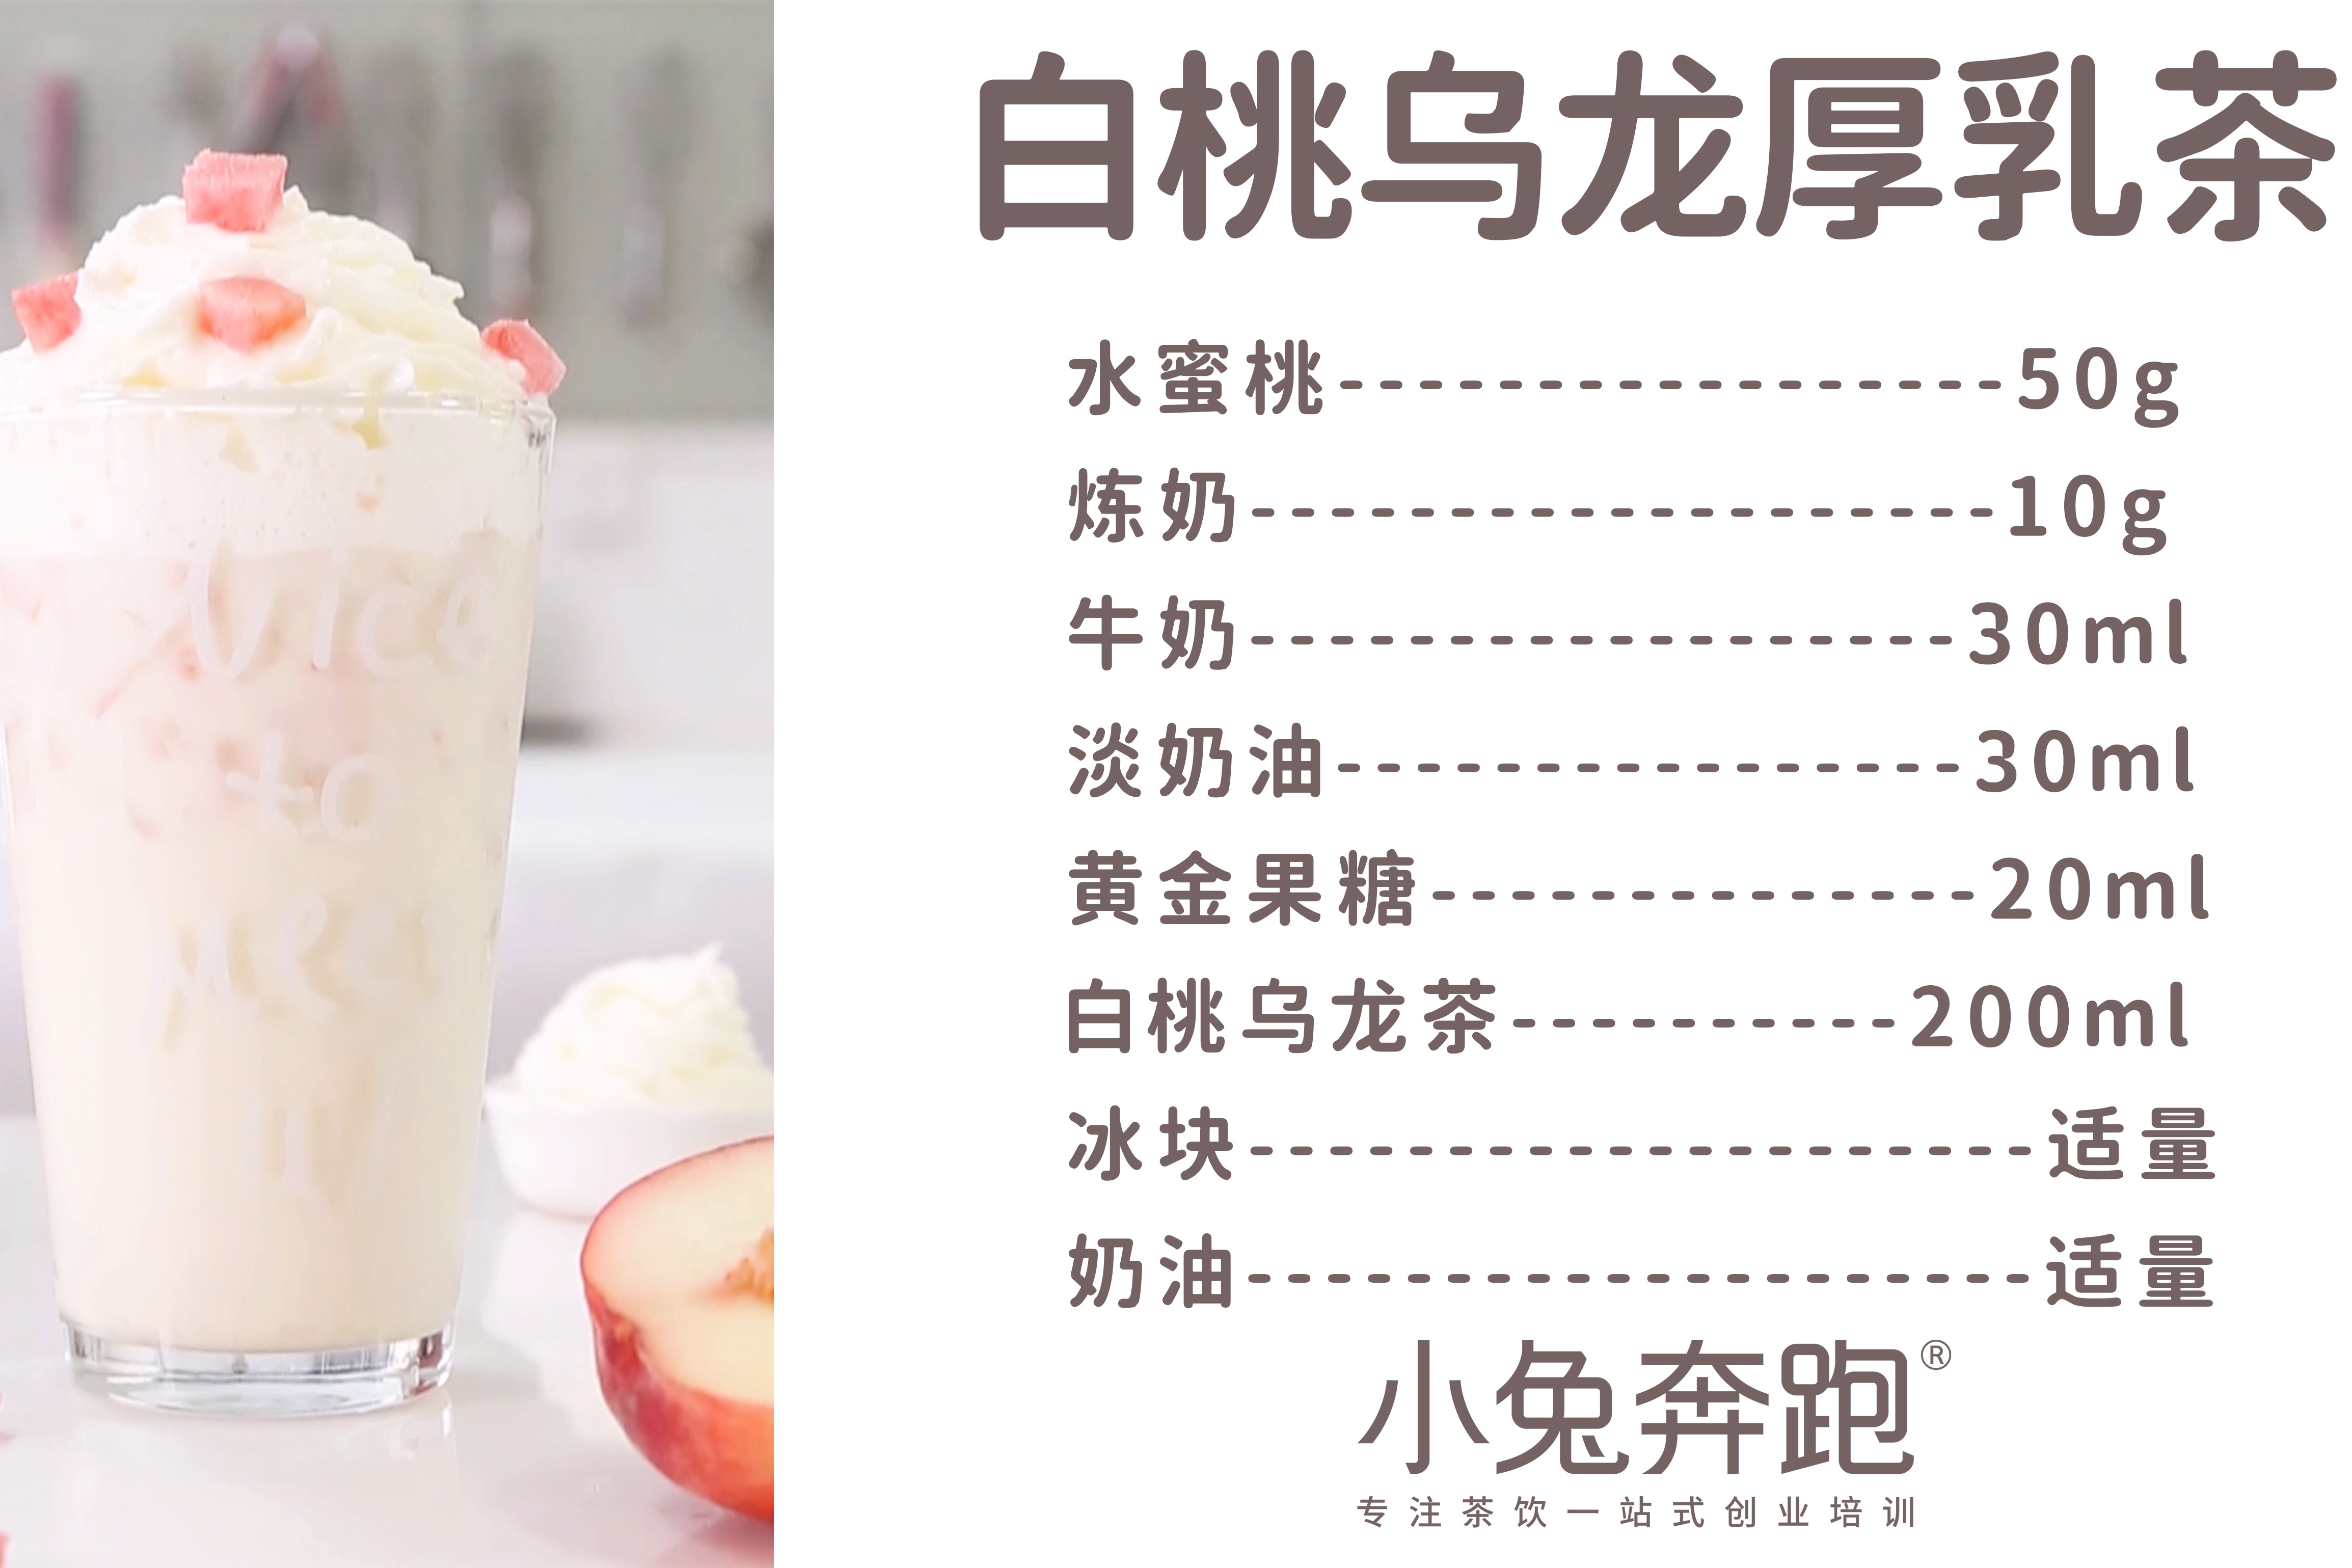 章若楠化身古茗店长，为粉丝带来秋天第一杯奶茶 - 中国日报网